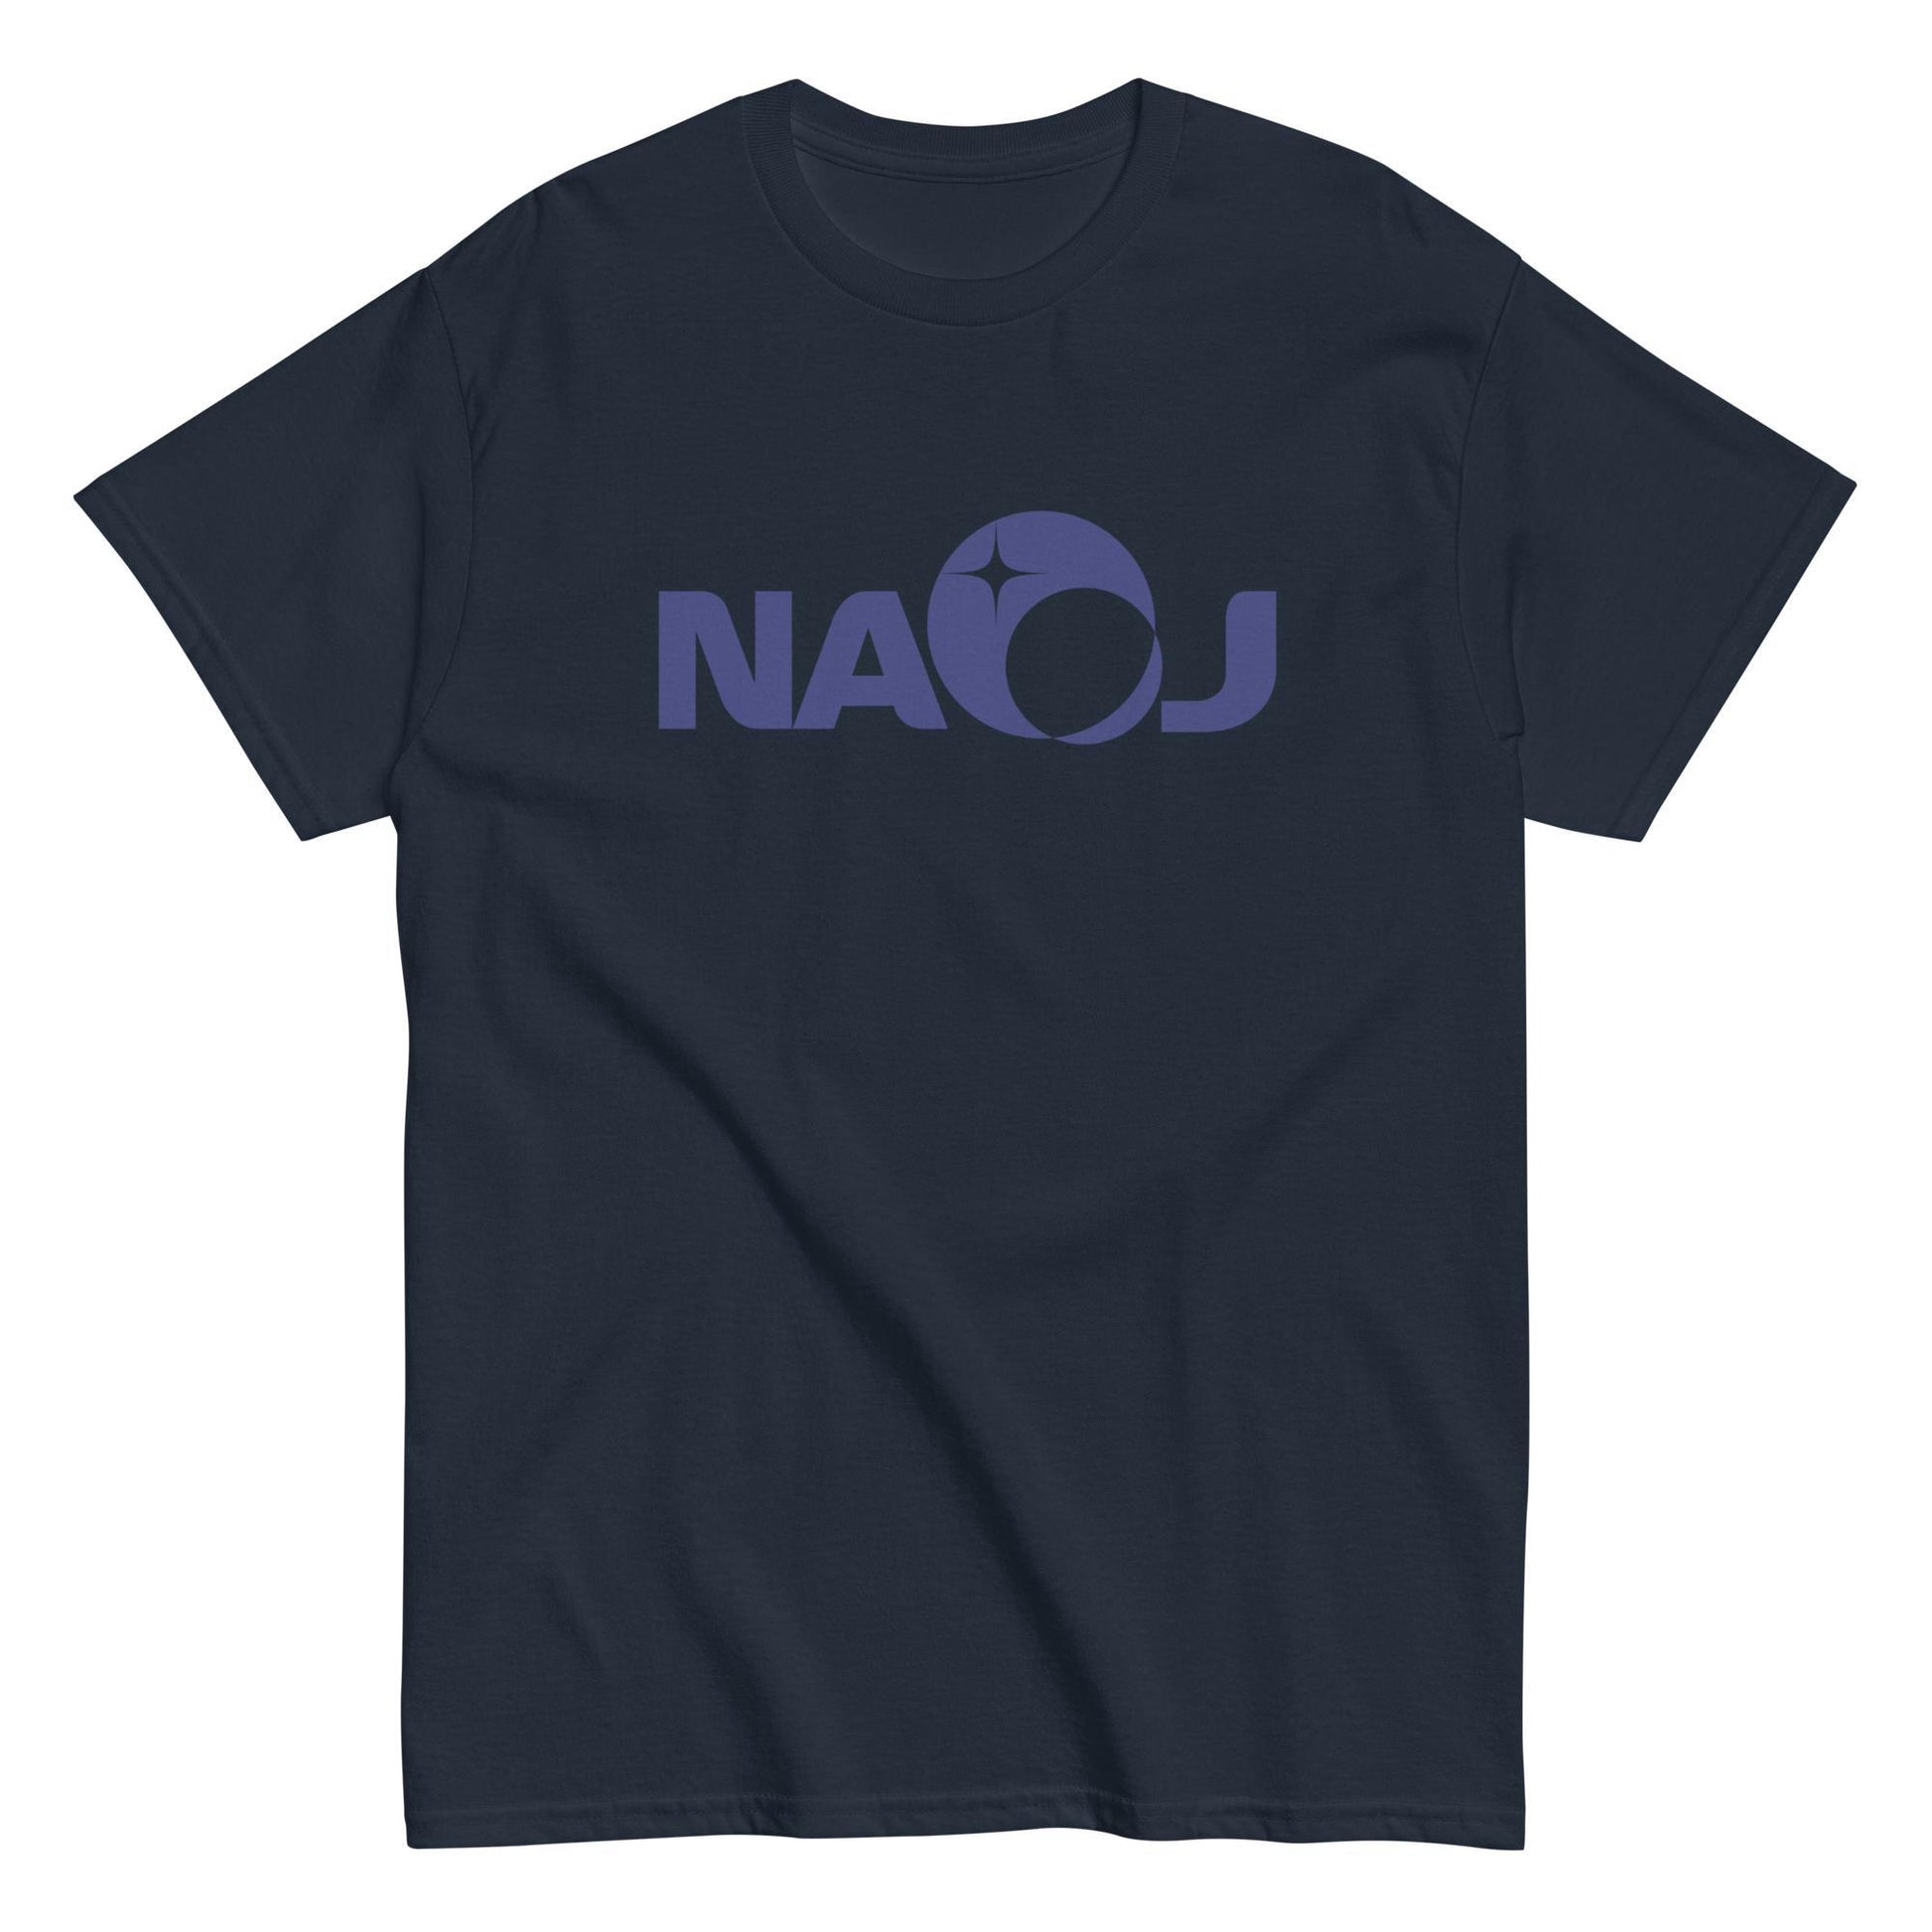 国立天文台 NAOJ ロゴマーク ヘビーウェイト Tシャツ ネイビー x ネイビー S 00